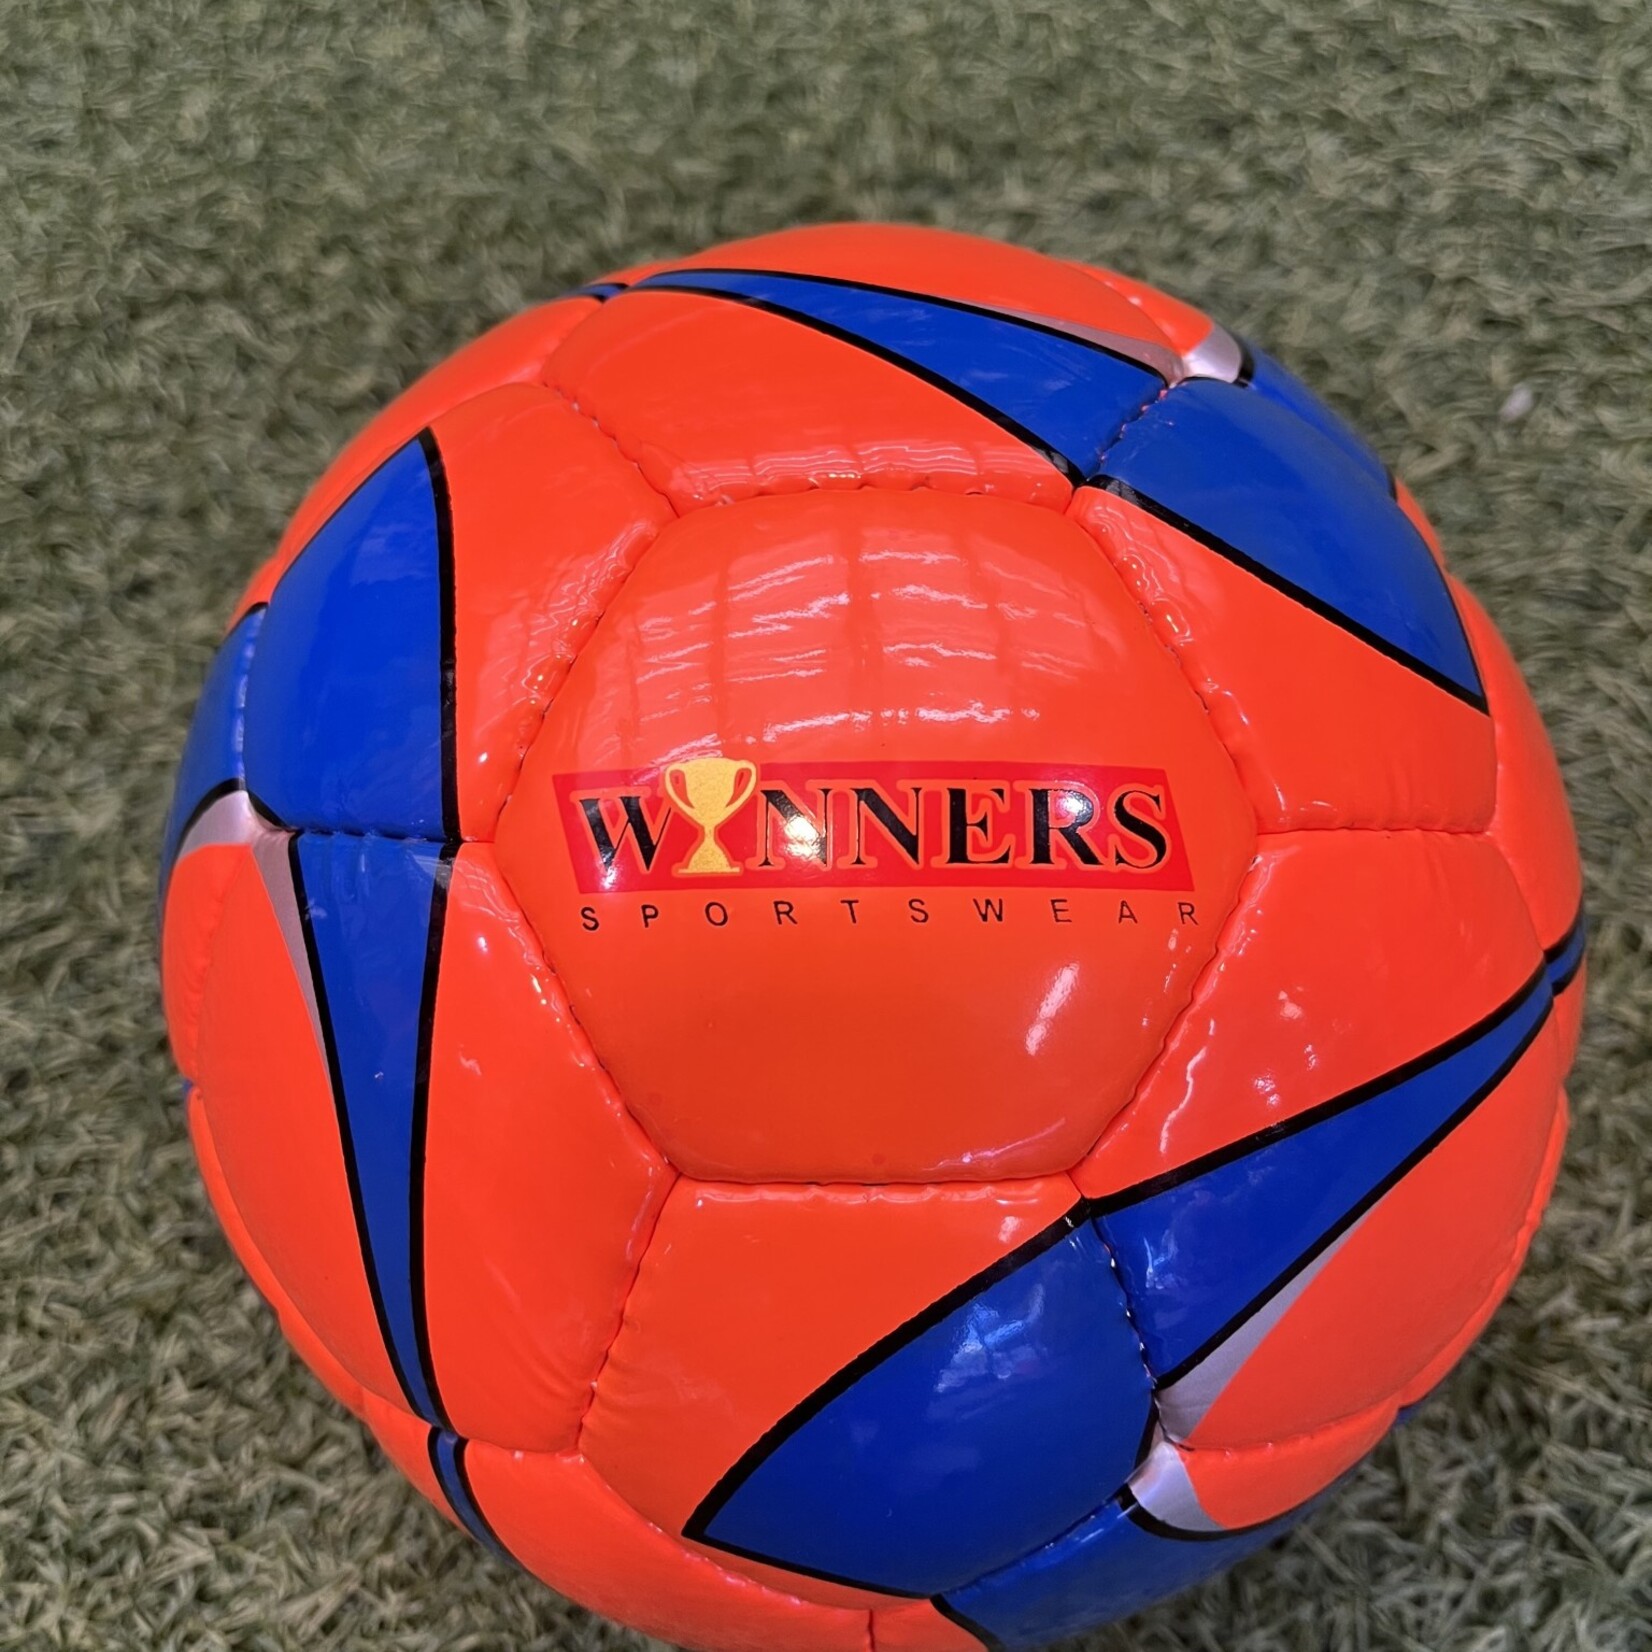 Winners Sportswear Winners Sportswear Strata Soccer Ball